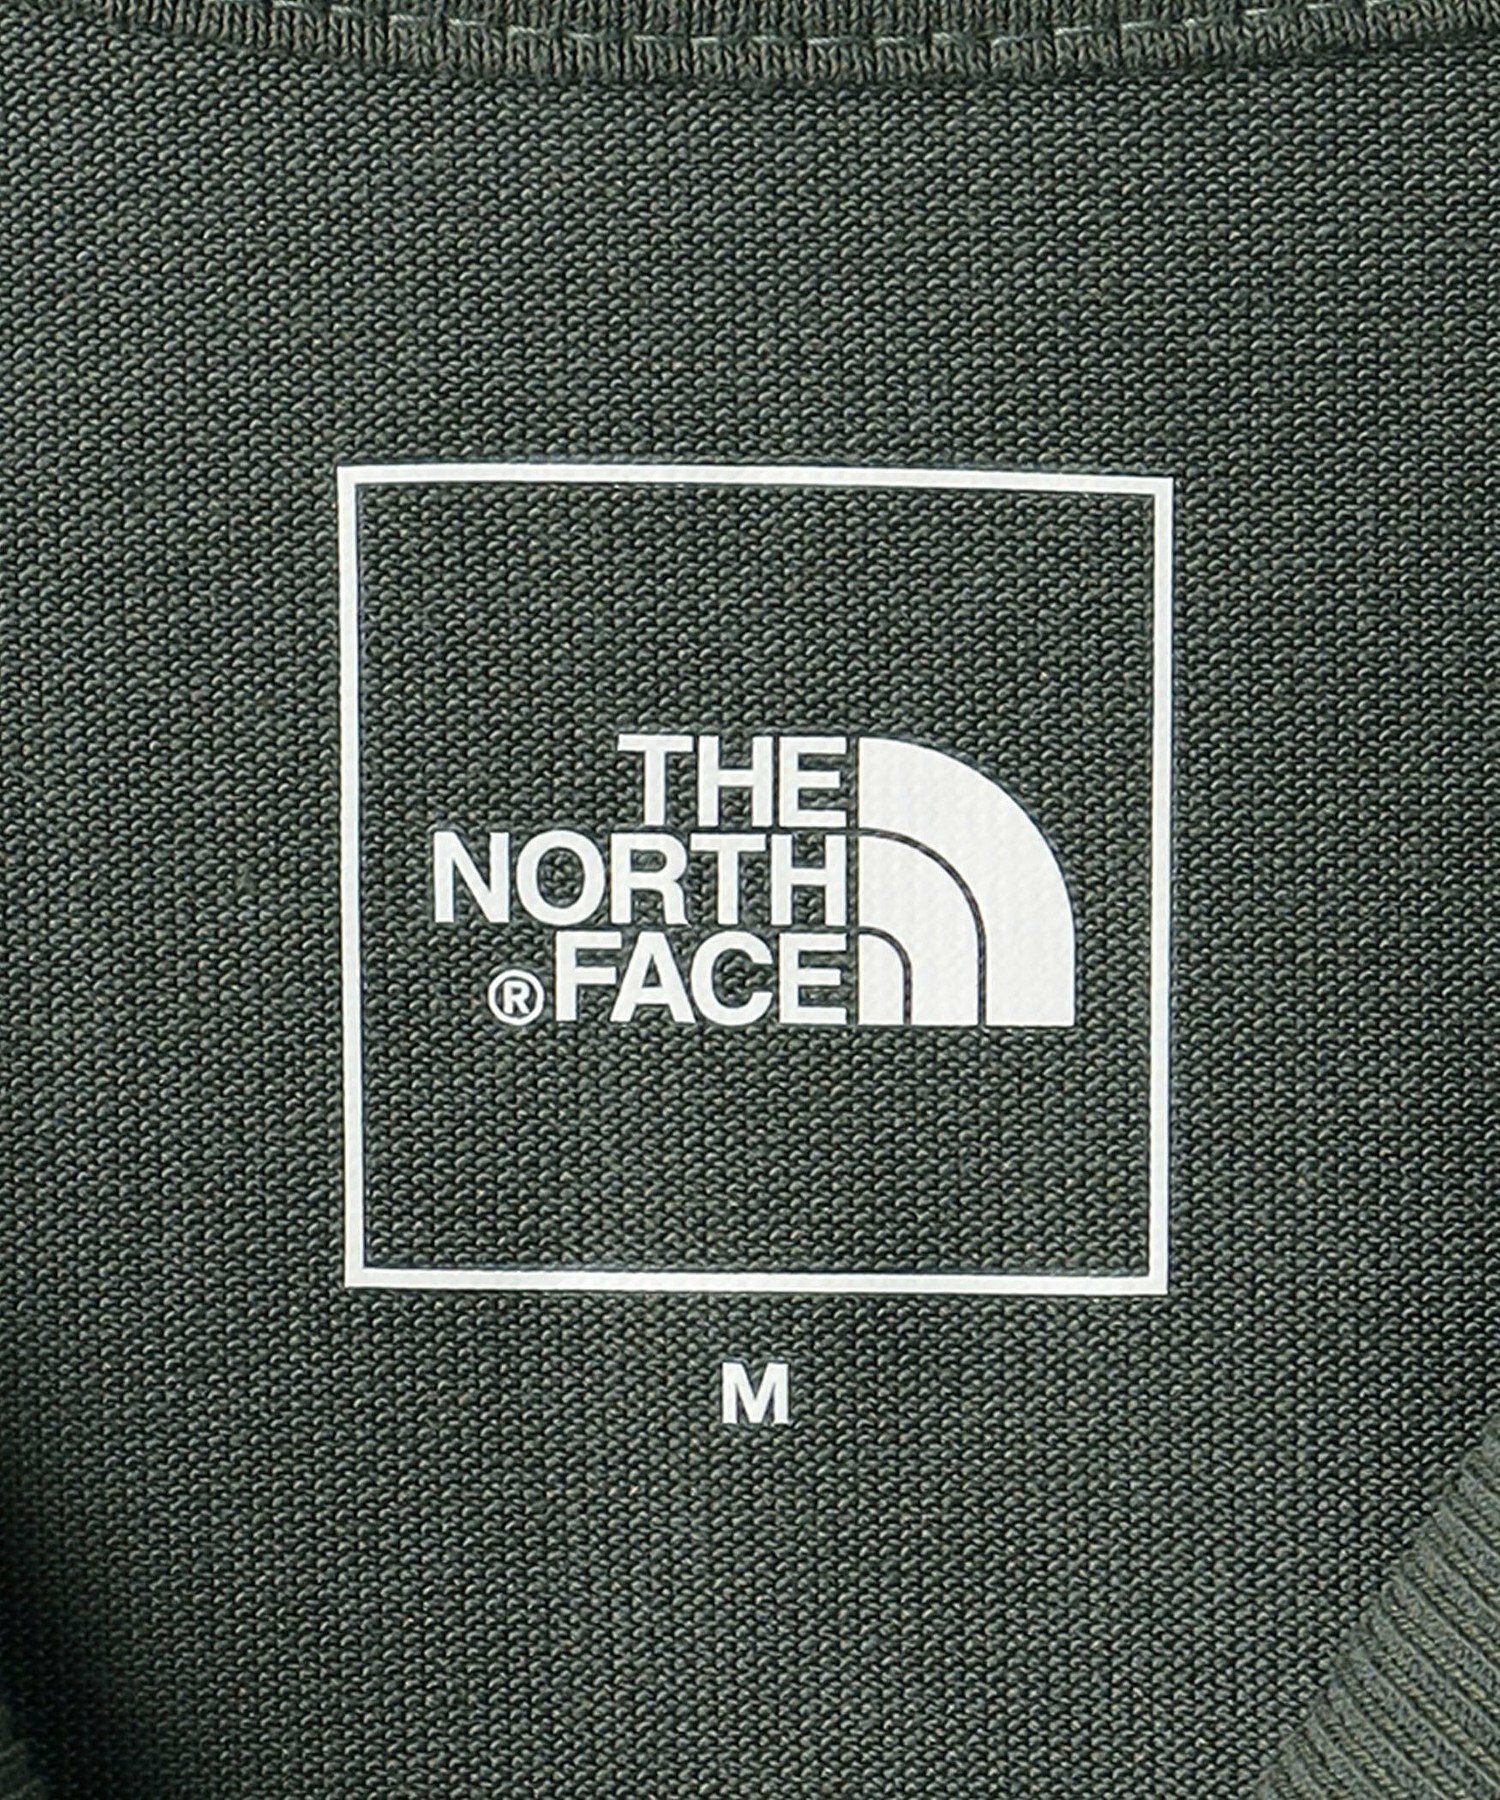 <THE NORTH FACE>ヌプシ ショートスリーブ Tシャツ